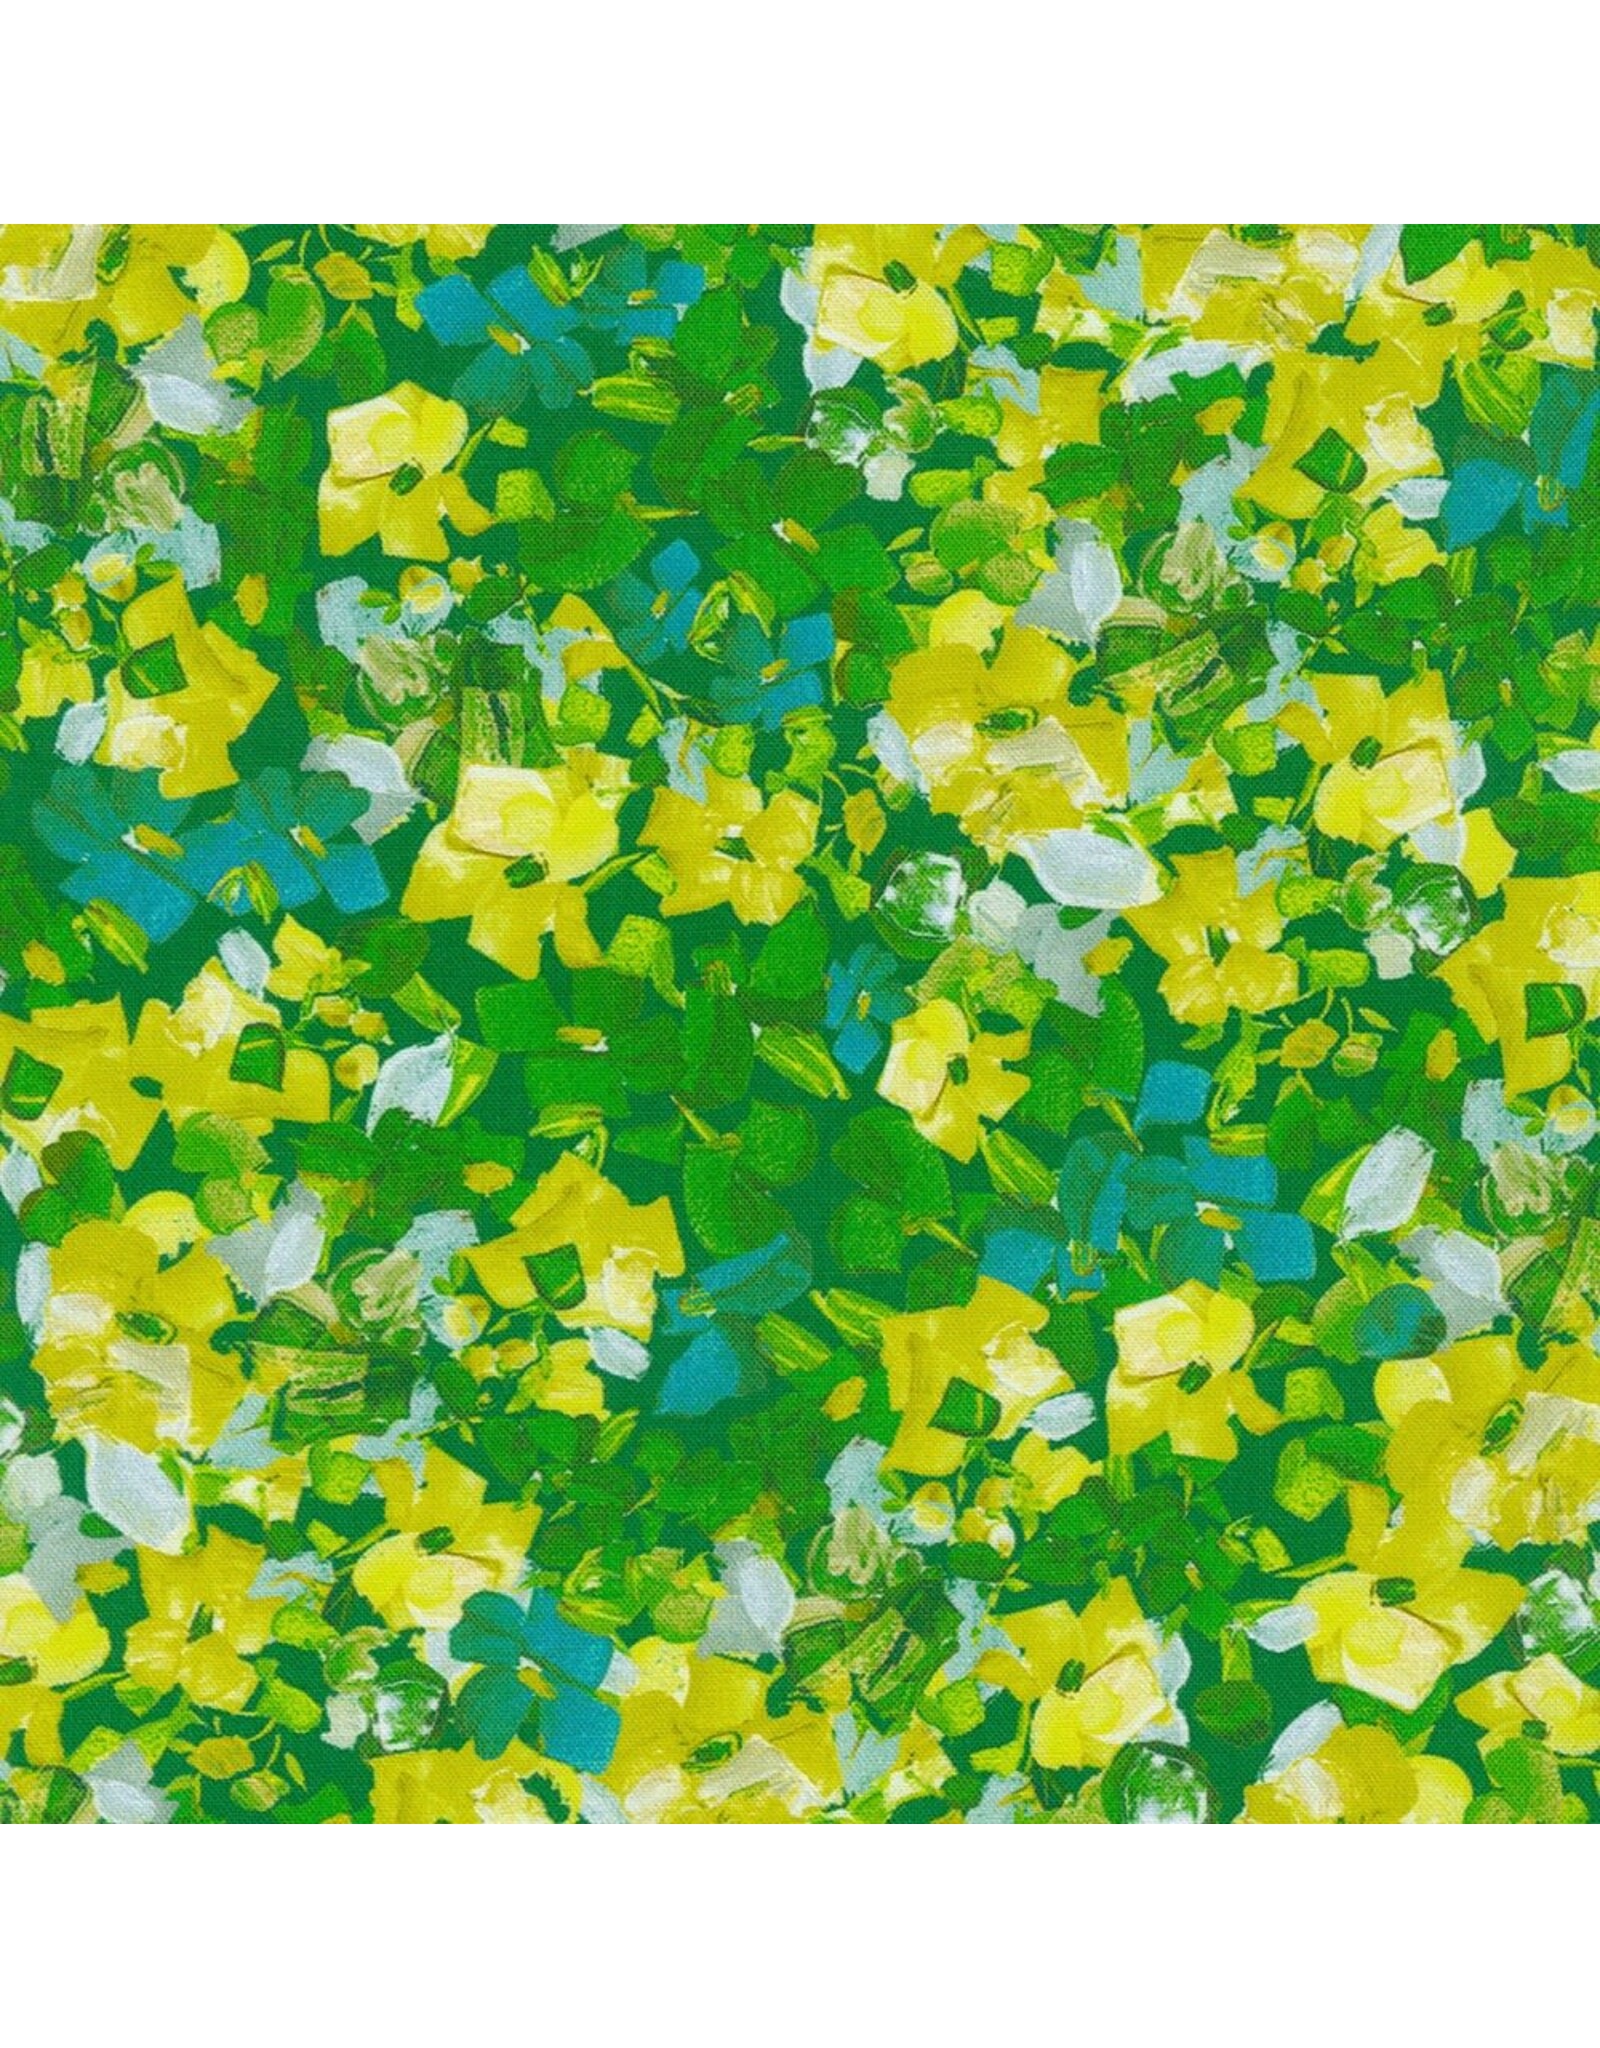 Robert Kaufman Painterly Petals Meadow, Garden in Green, Fabric Half-Yards